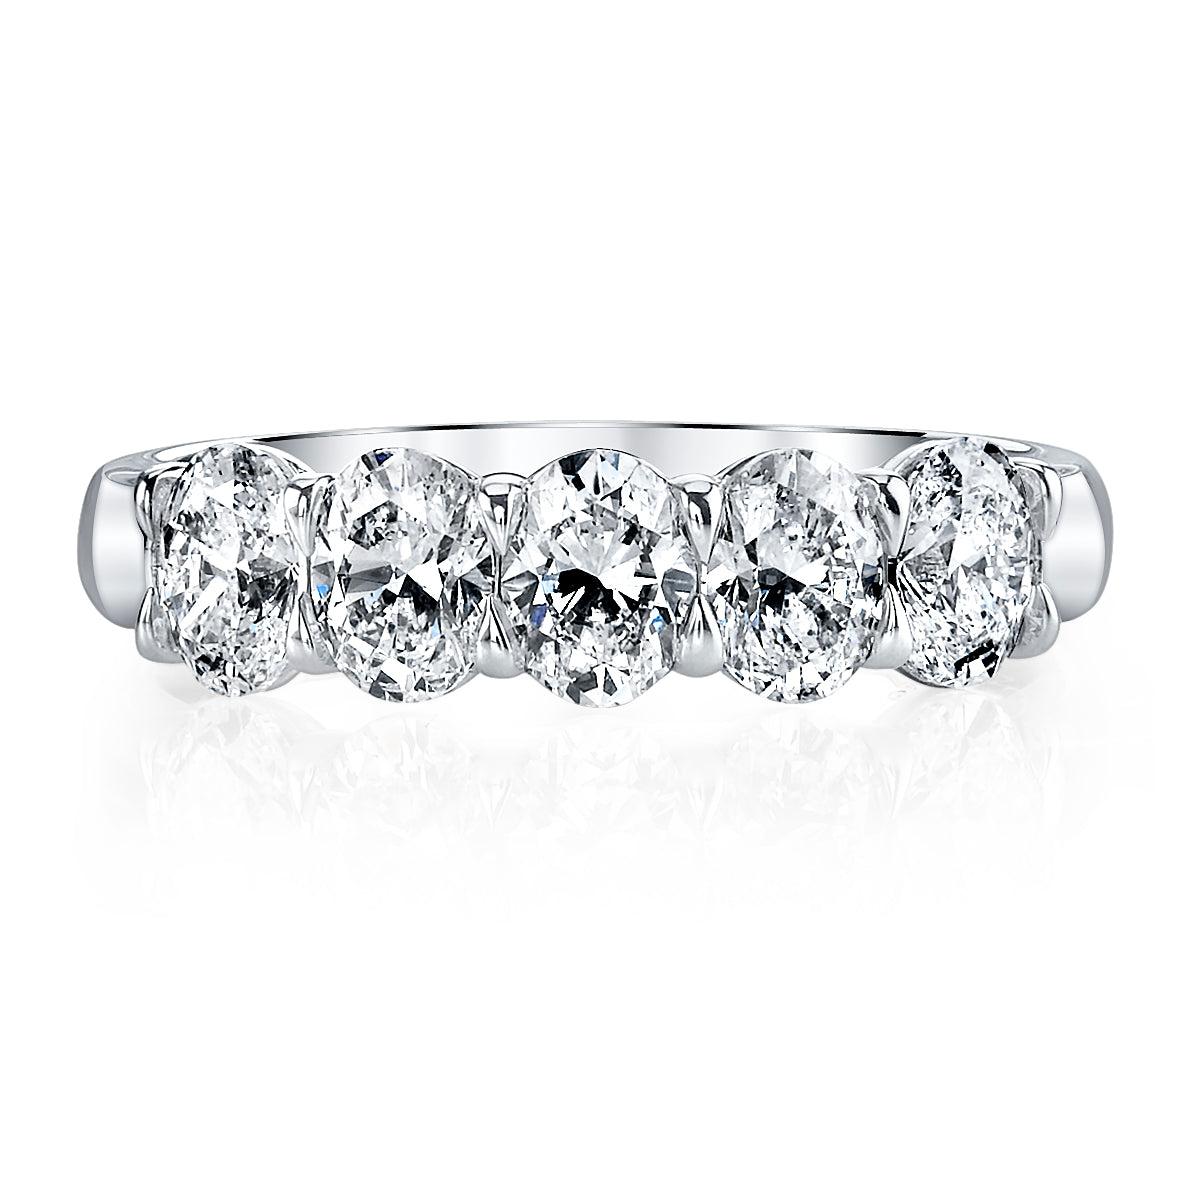 Cet élégant bracelet d'éternité à 5 pierres ovales taillées en diamant met en valeur 5 diamants, encadrés par un magnifique anneau en forme de bouton d'or façonné en platine.  

Bracelet éternel ovale taillé en diamant
Diamants : 5pcs 2.01ct G/H